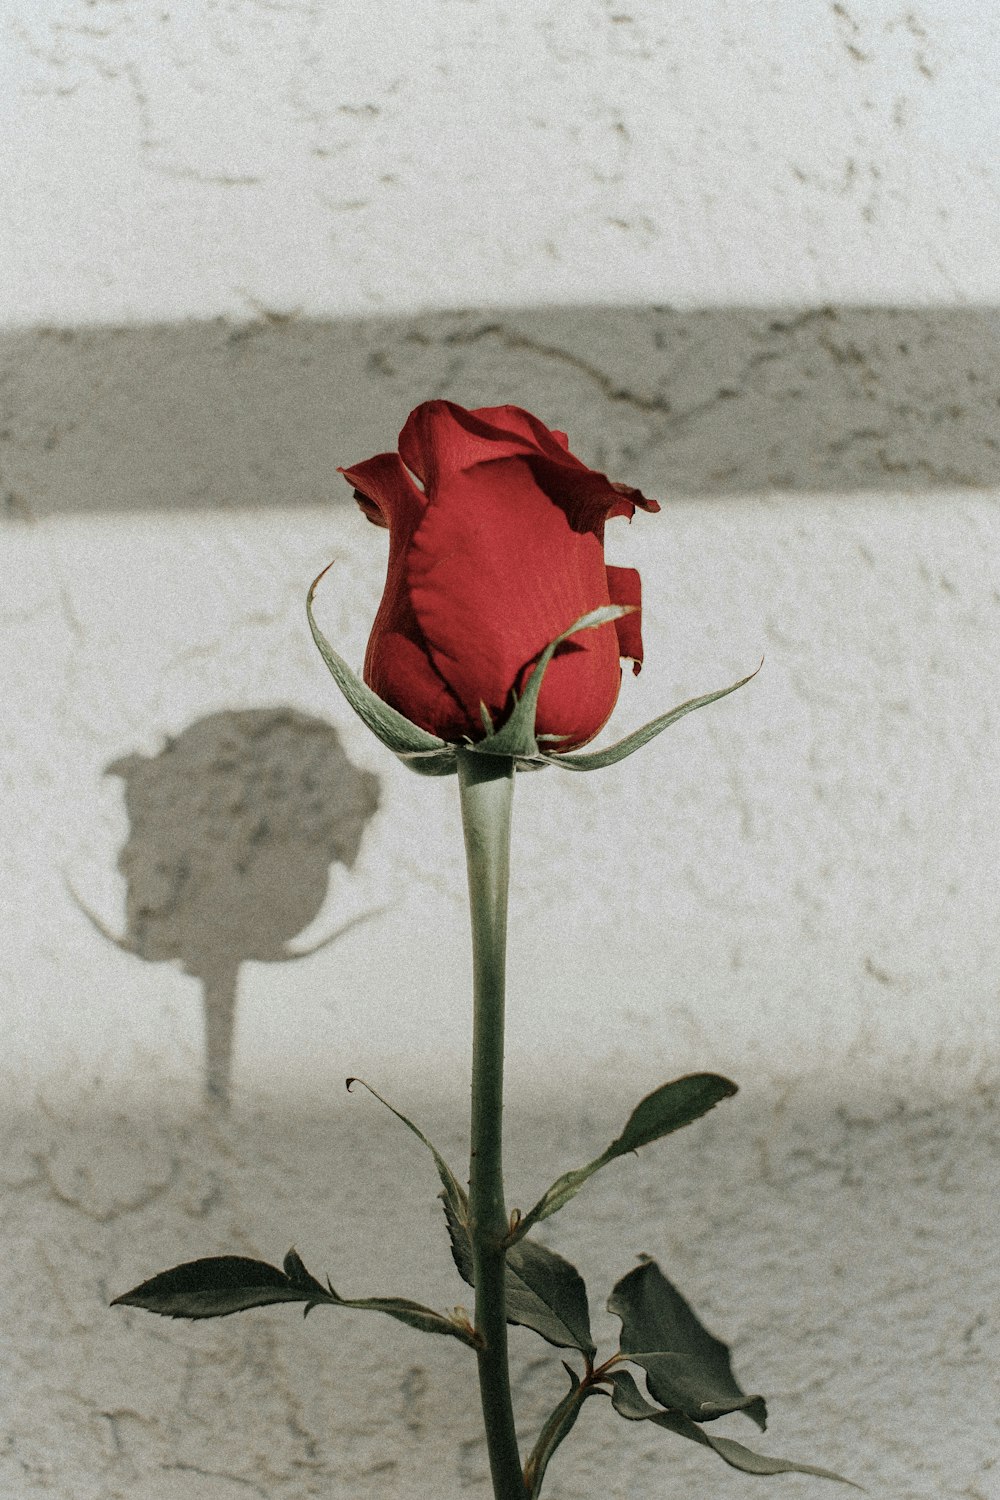 Fotografia a fuoco superficiale della rosa rossa